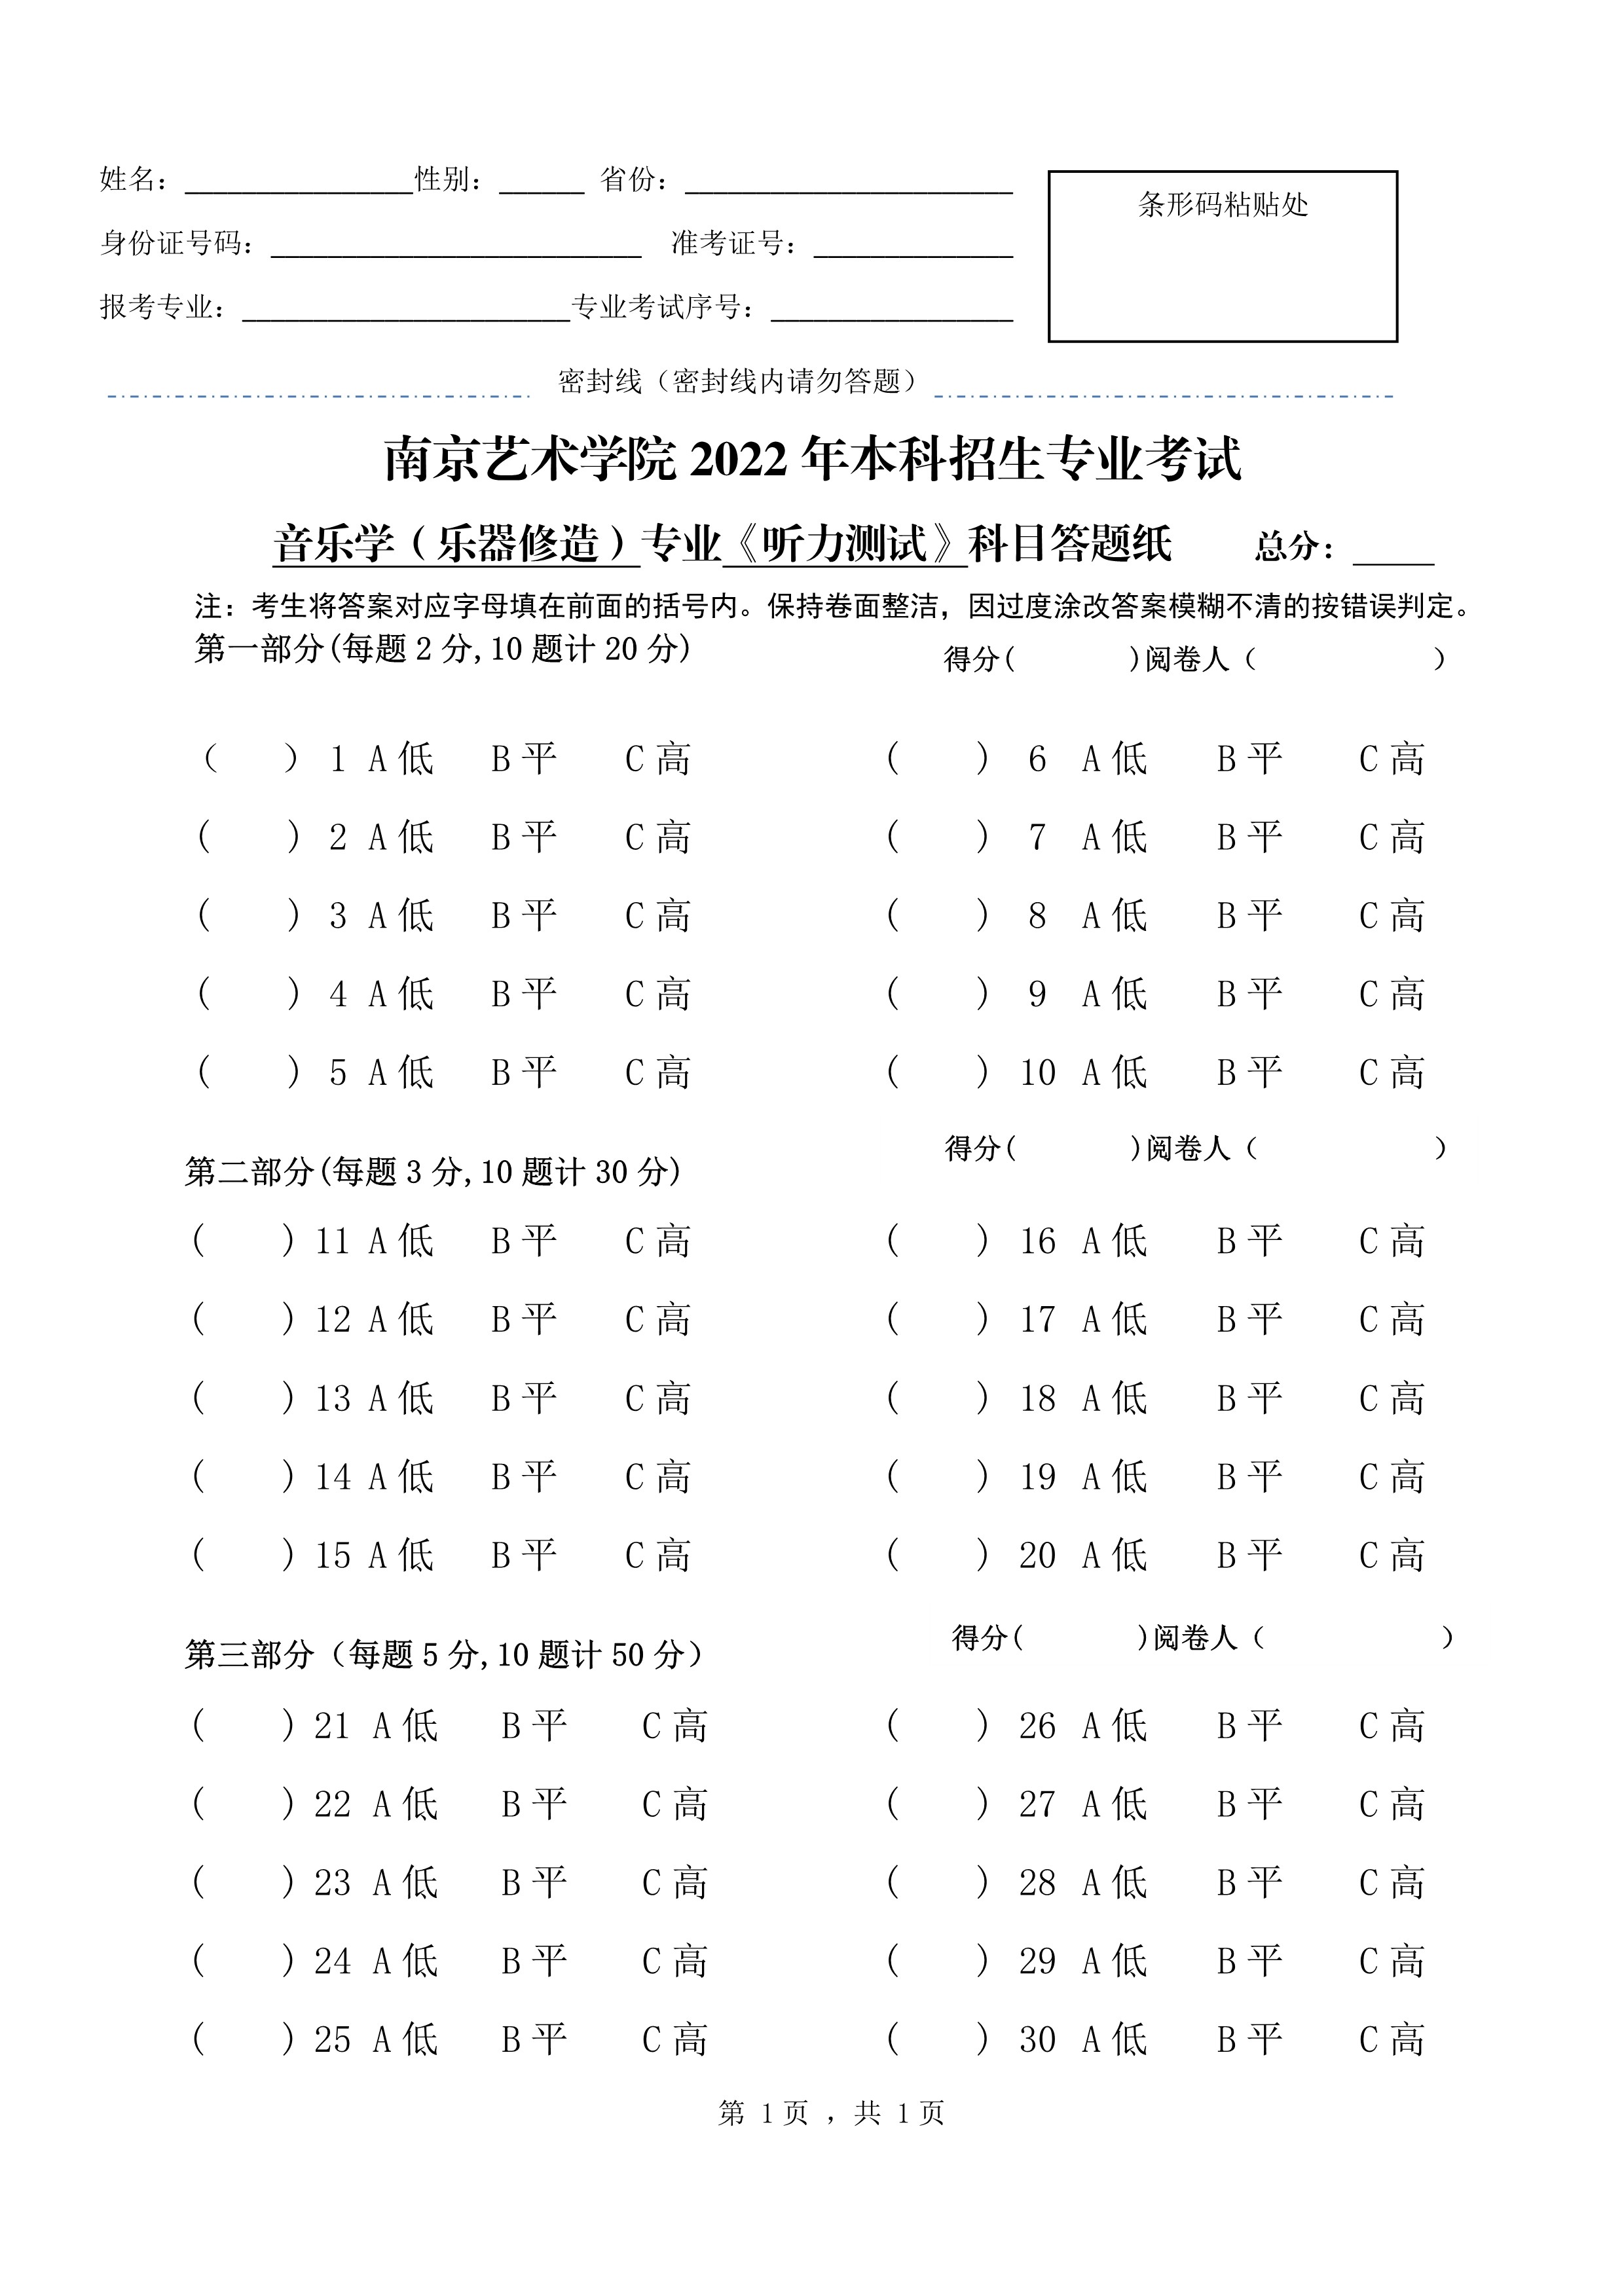 南京艺术学院2022年本科招生音乐学（乐器修造）专业《听力测试》科目考试答题纸_1.jpg